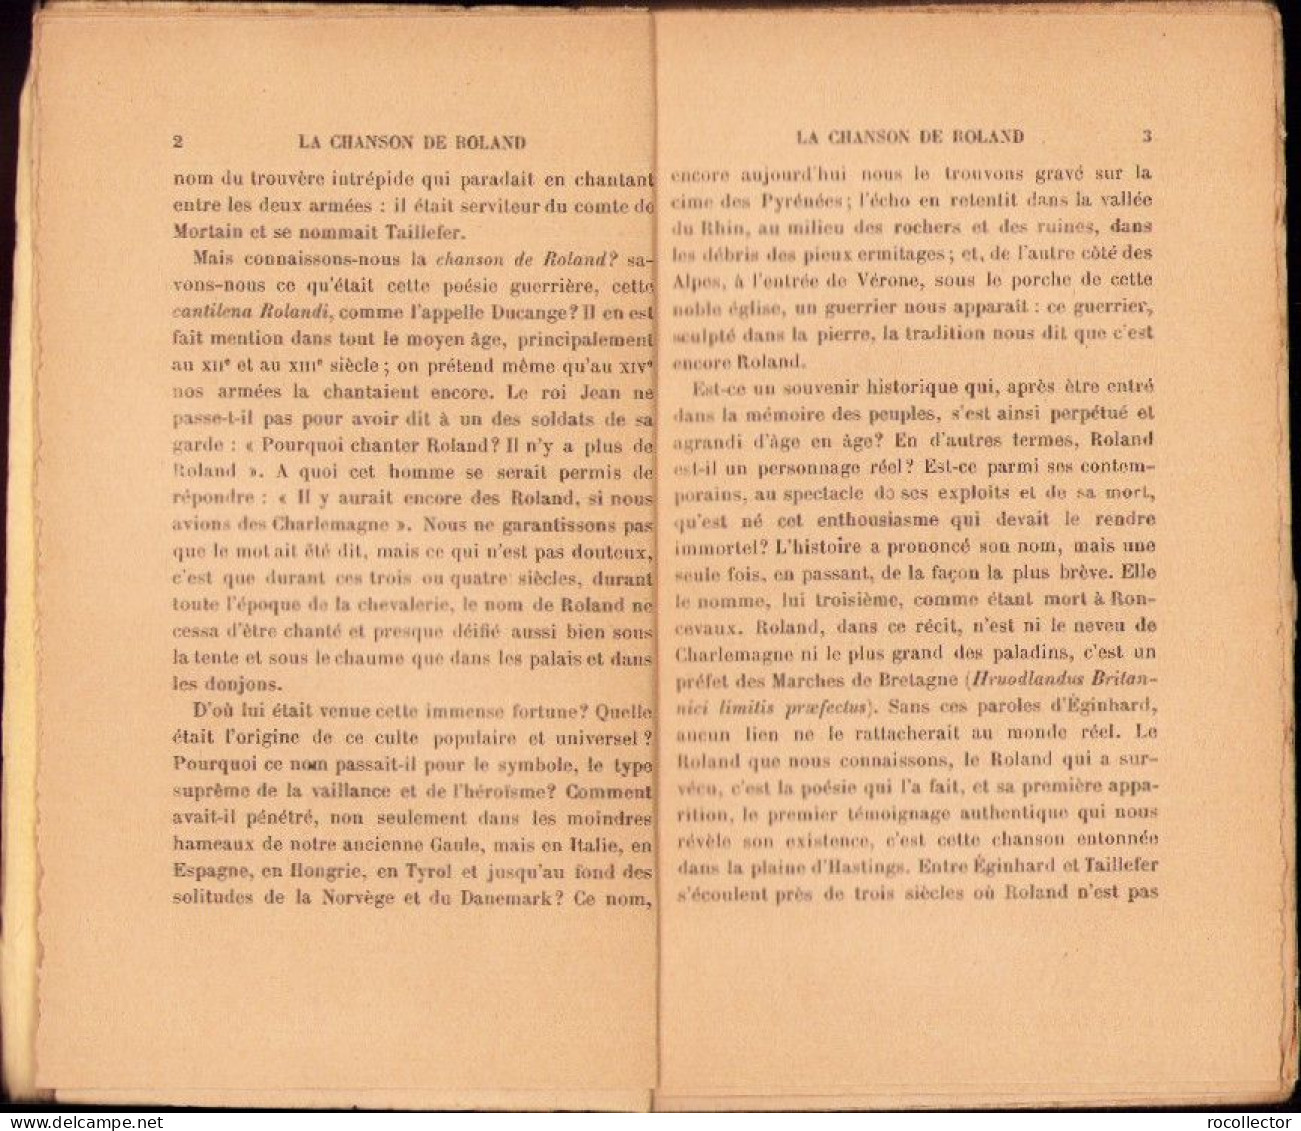 La Chanson De Roland Poeme De Theroulde Suivi De La Chronique De Turpin, Paris C4318N - Livres Anciens